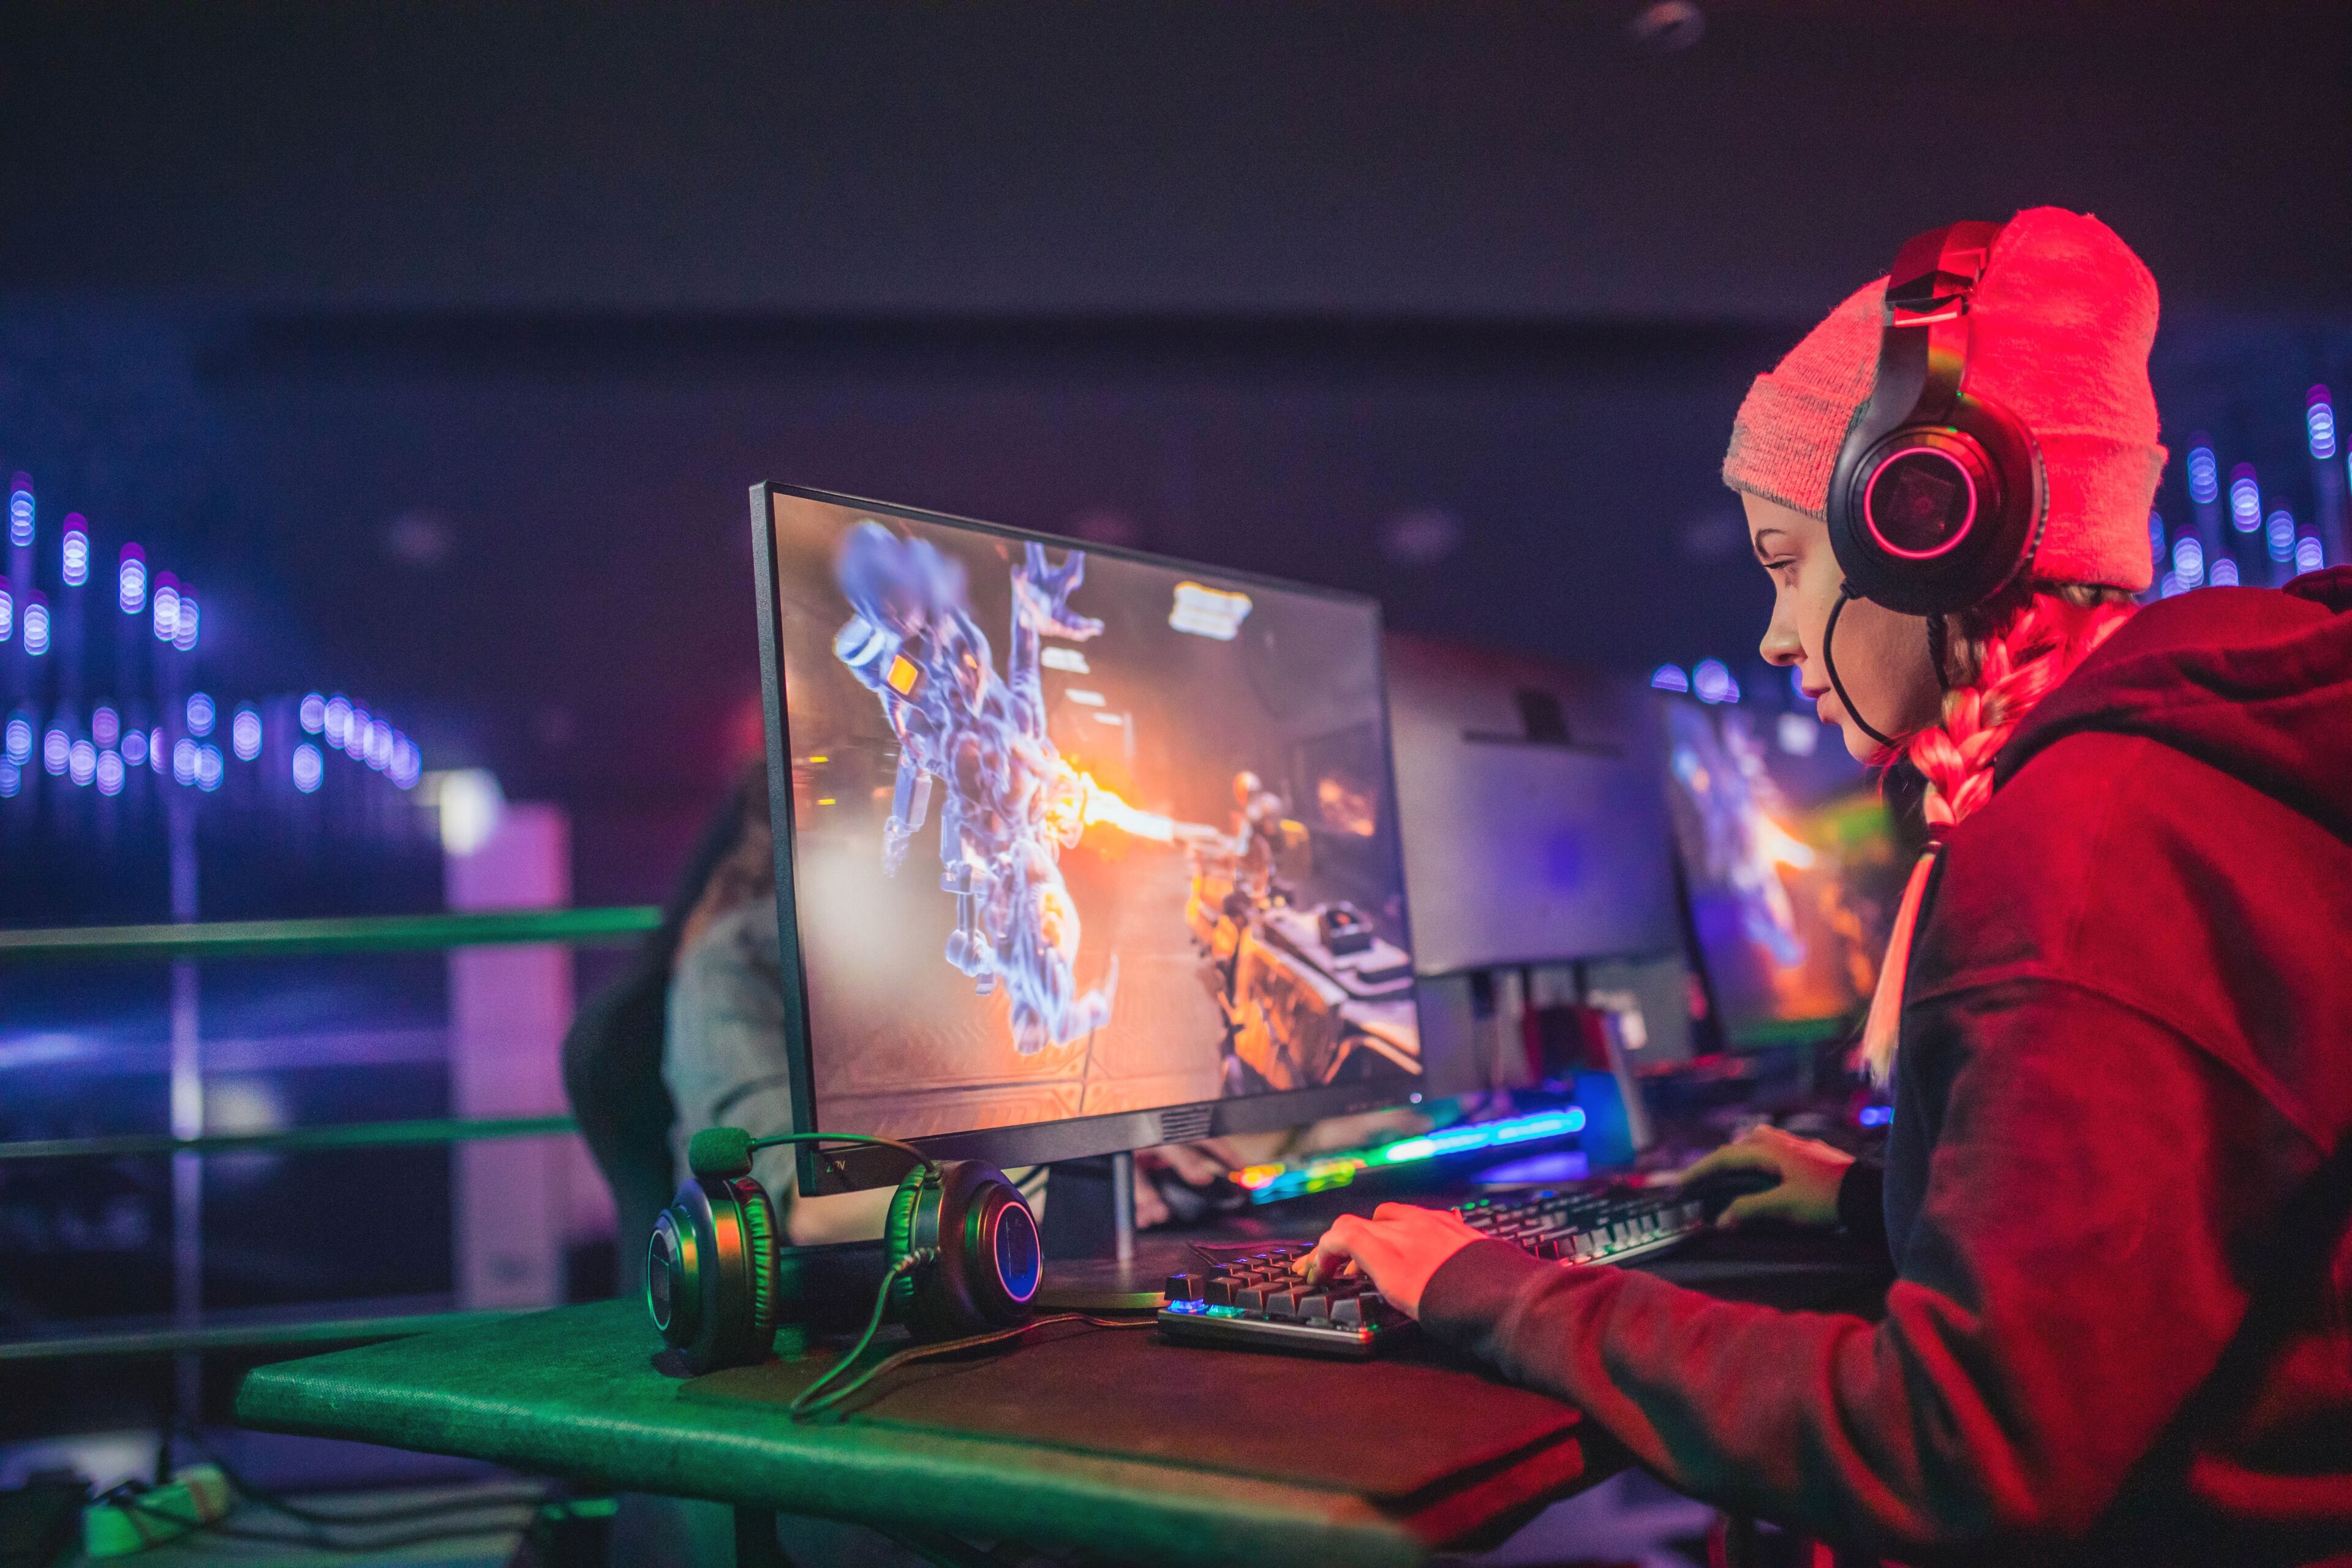 Un joueur concentré portant un bonnet rouge et des écouteurs joue à un jeu vidéo compétitif dans une arène d'eSports illuminée.